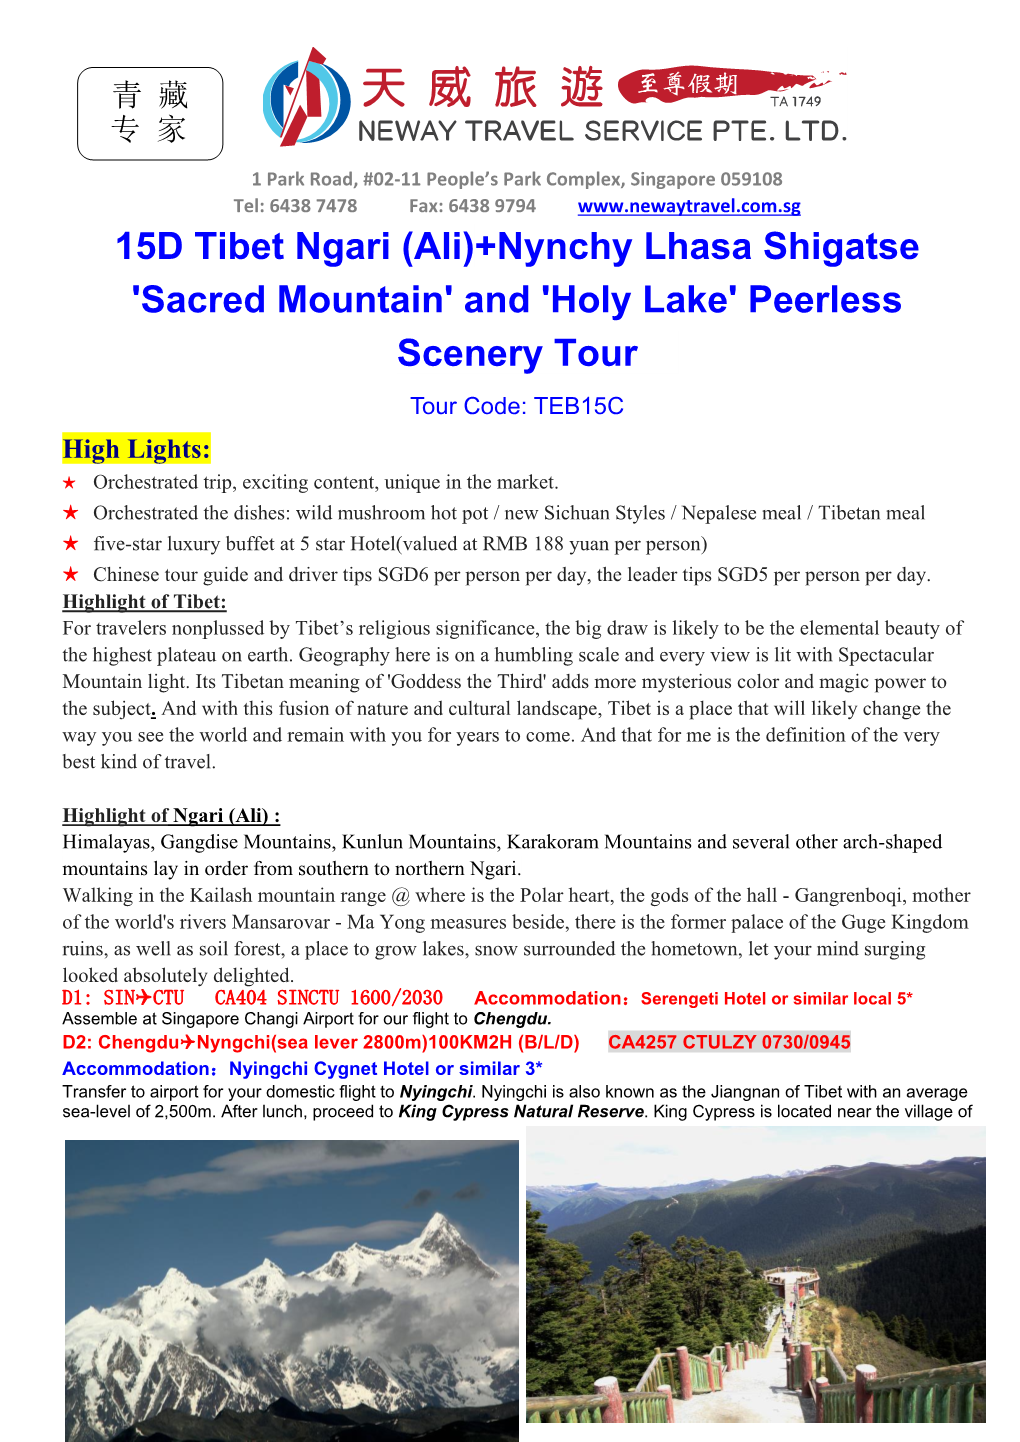 15D Tibet Ngari (Ali)+Nynchy Lhasa Shigatse